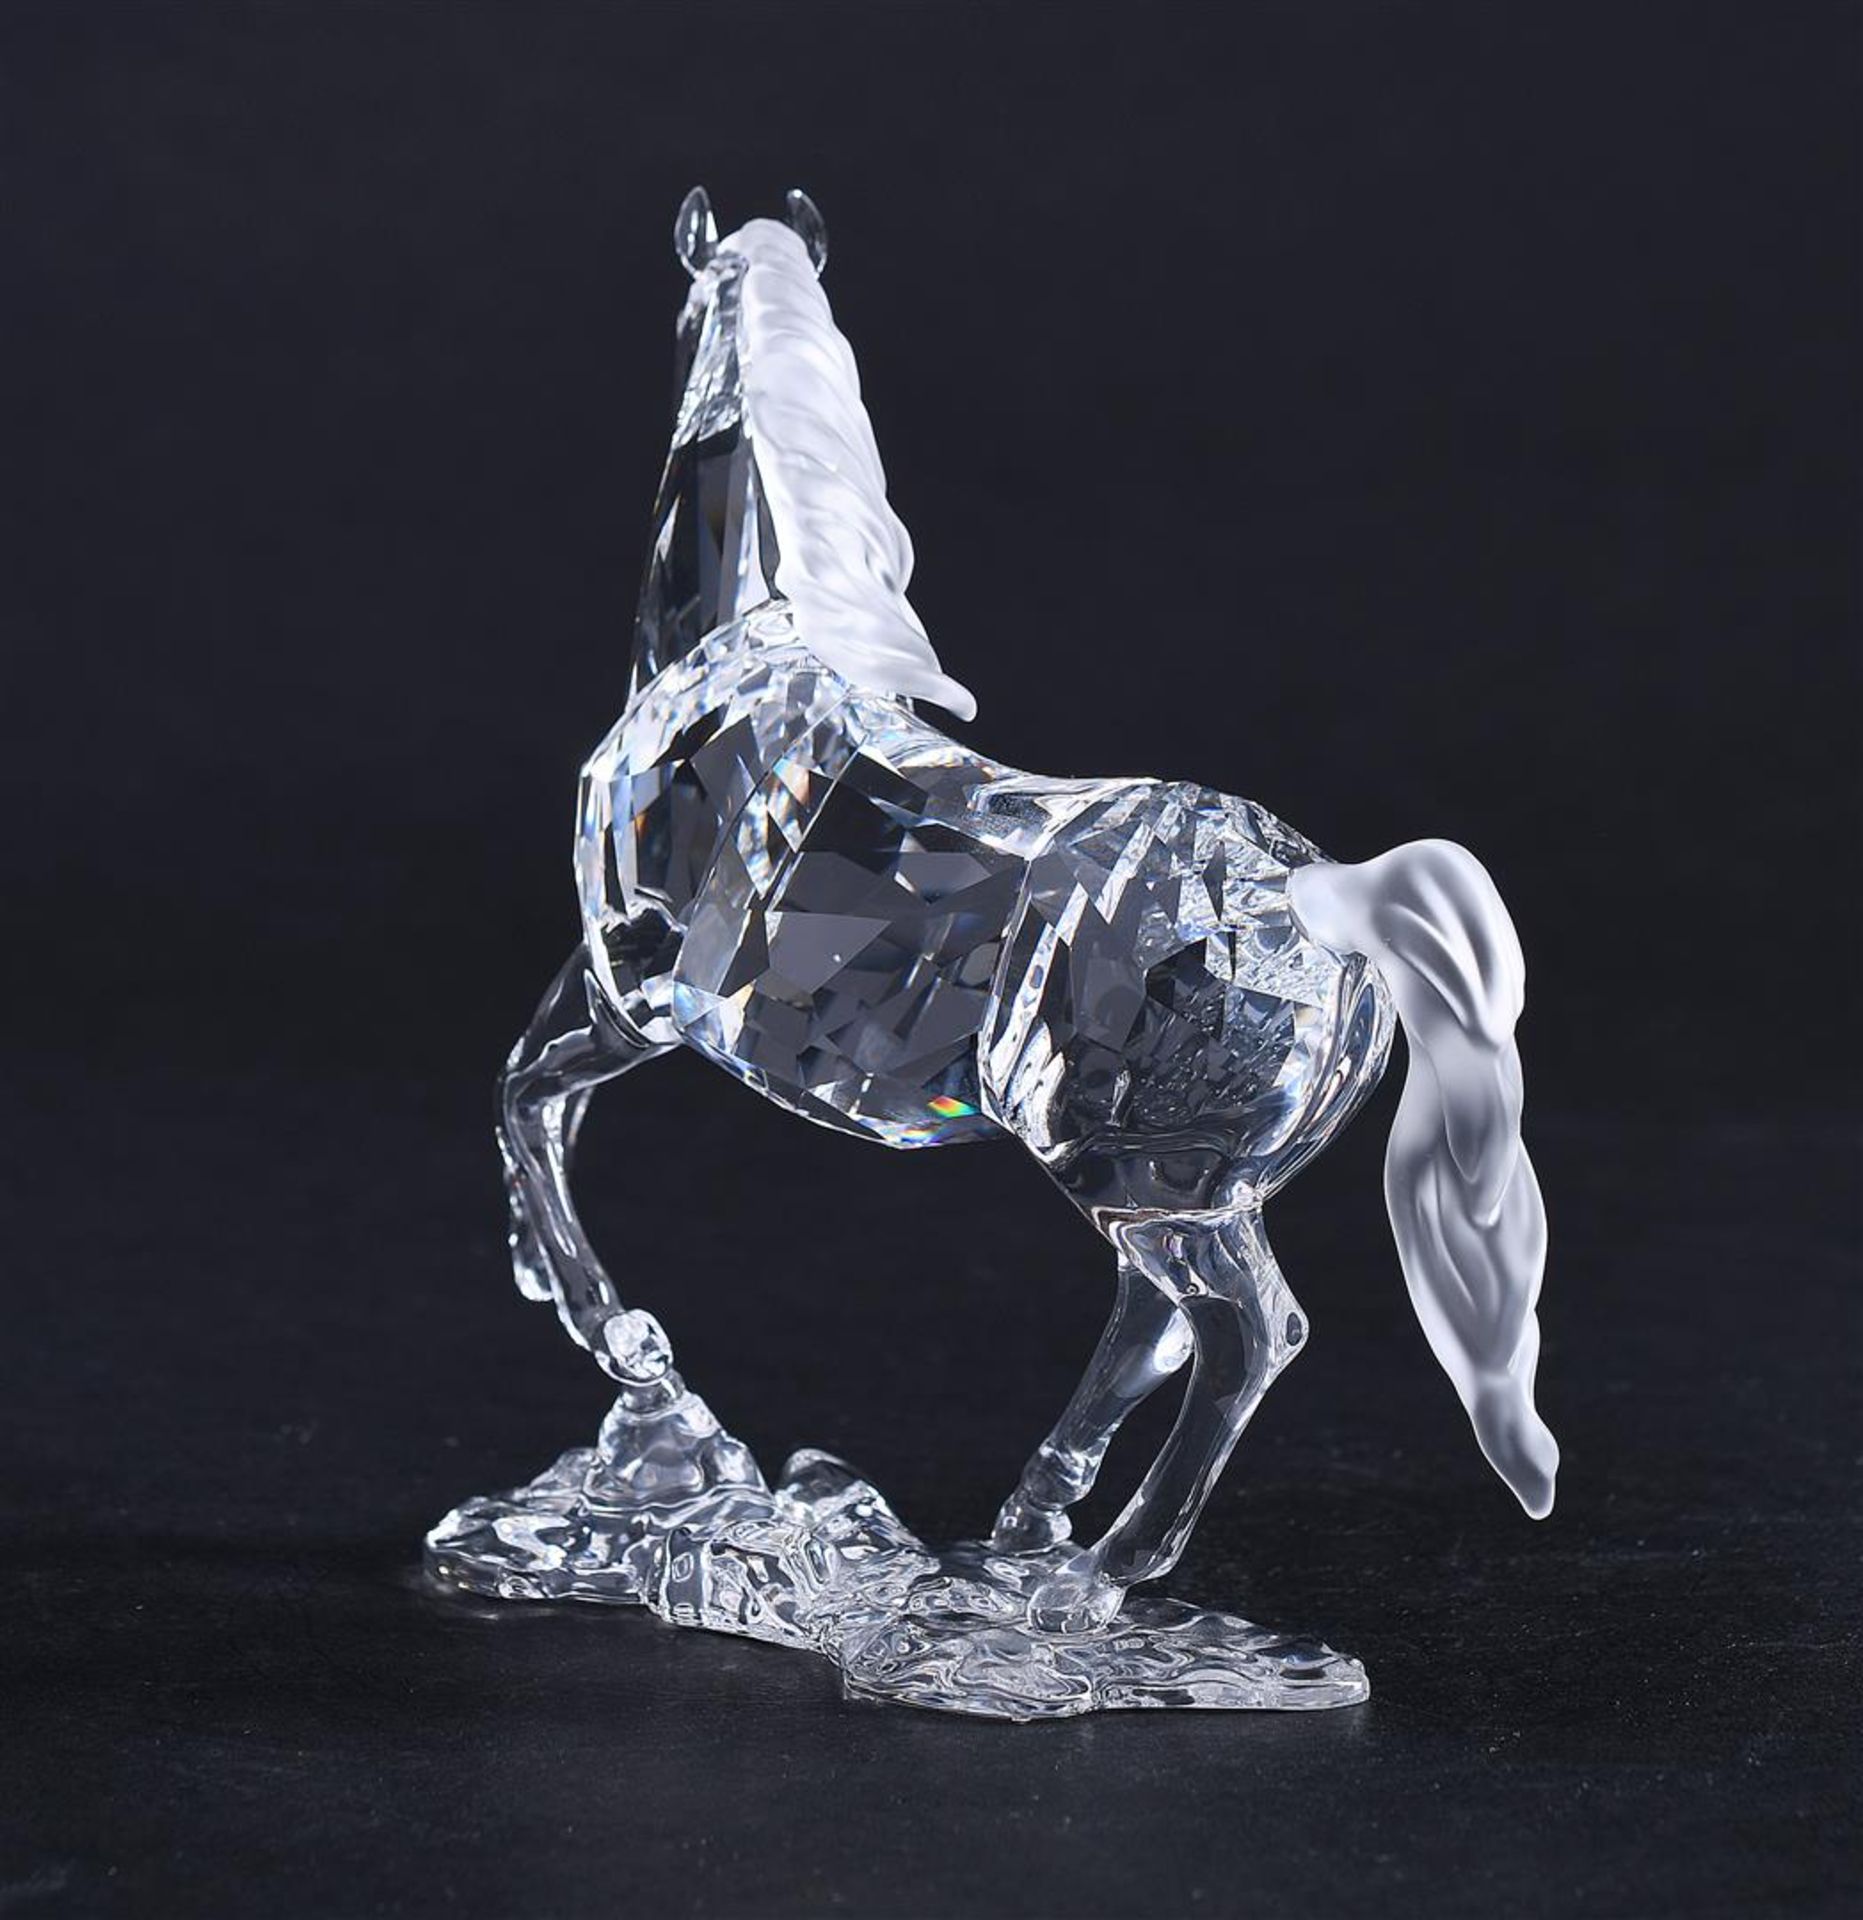 Swarovski, Stallion, Year of issue 2011, 898508, Includes original box.
14,4 x 14,6 cm. - Bild 5 aus 6